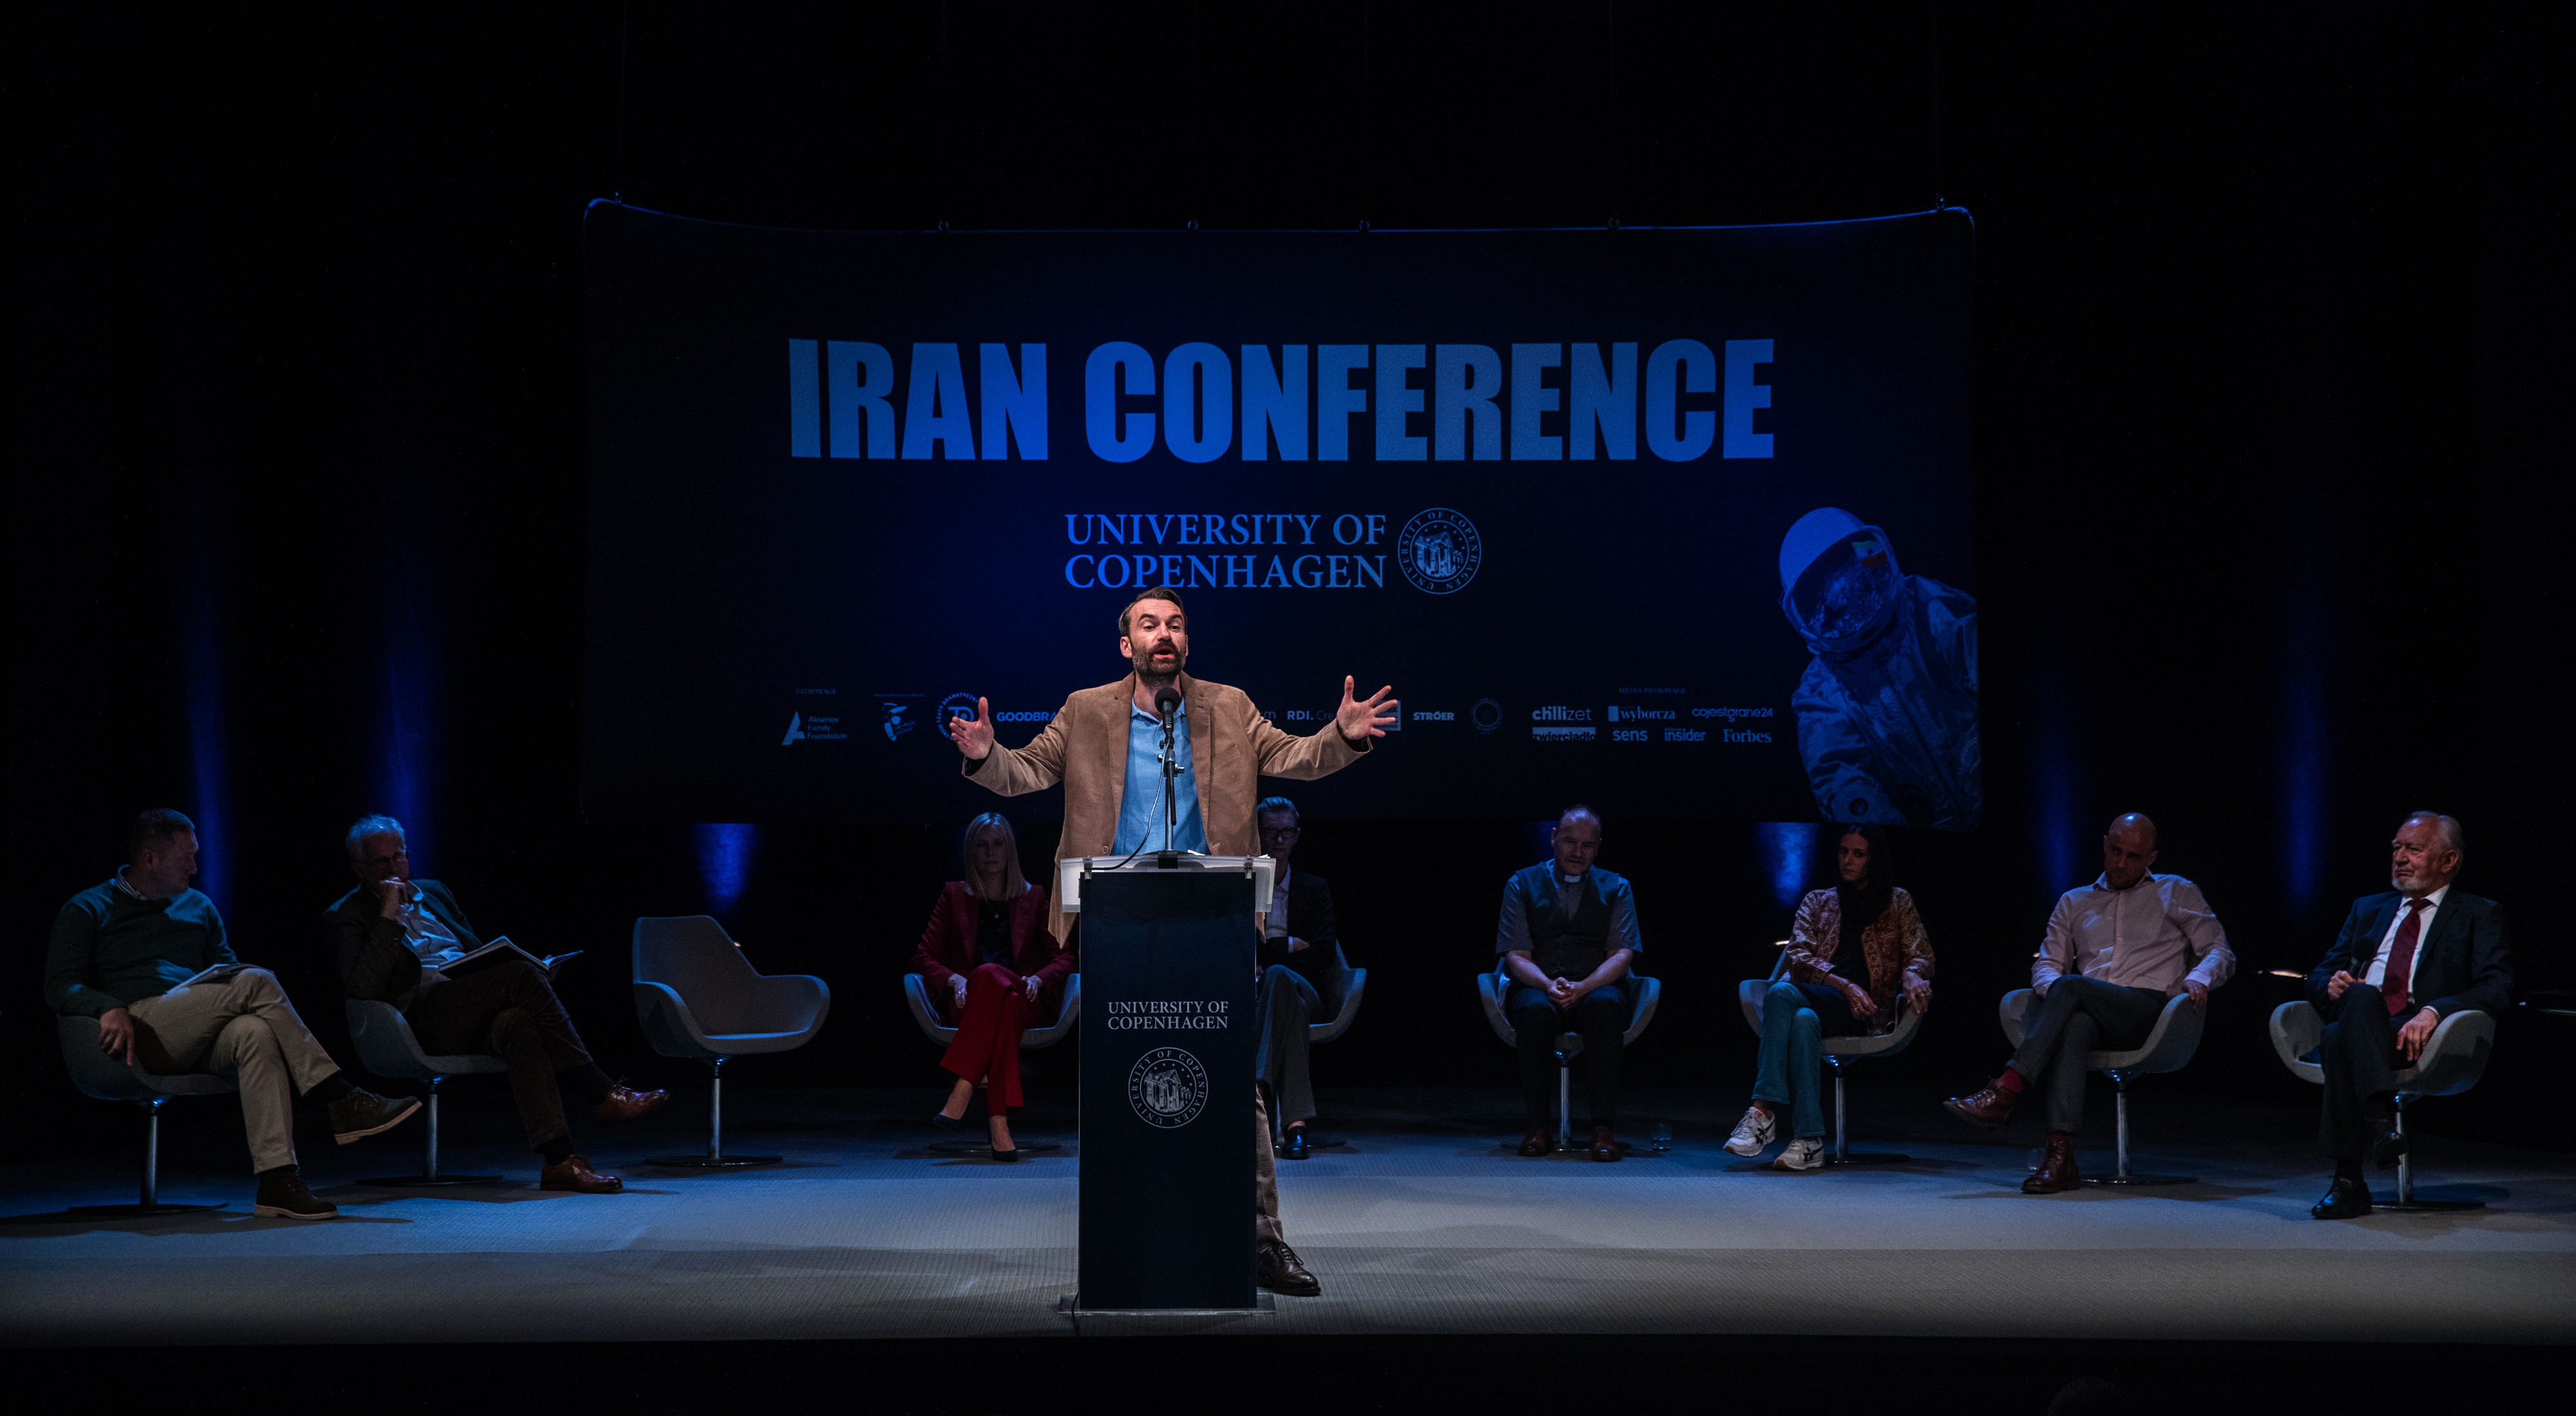 Иранская конференция – афиша